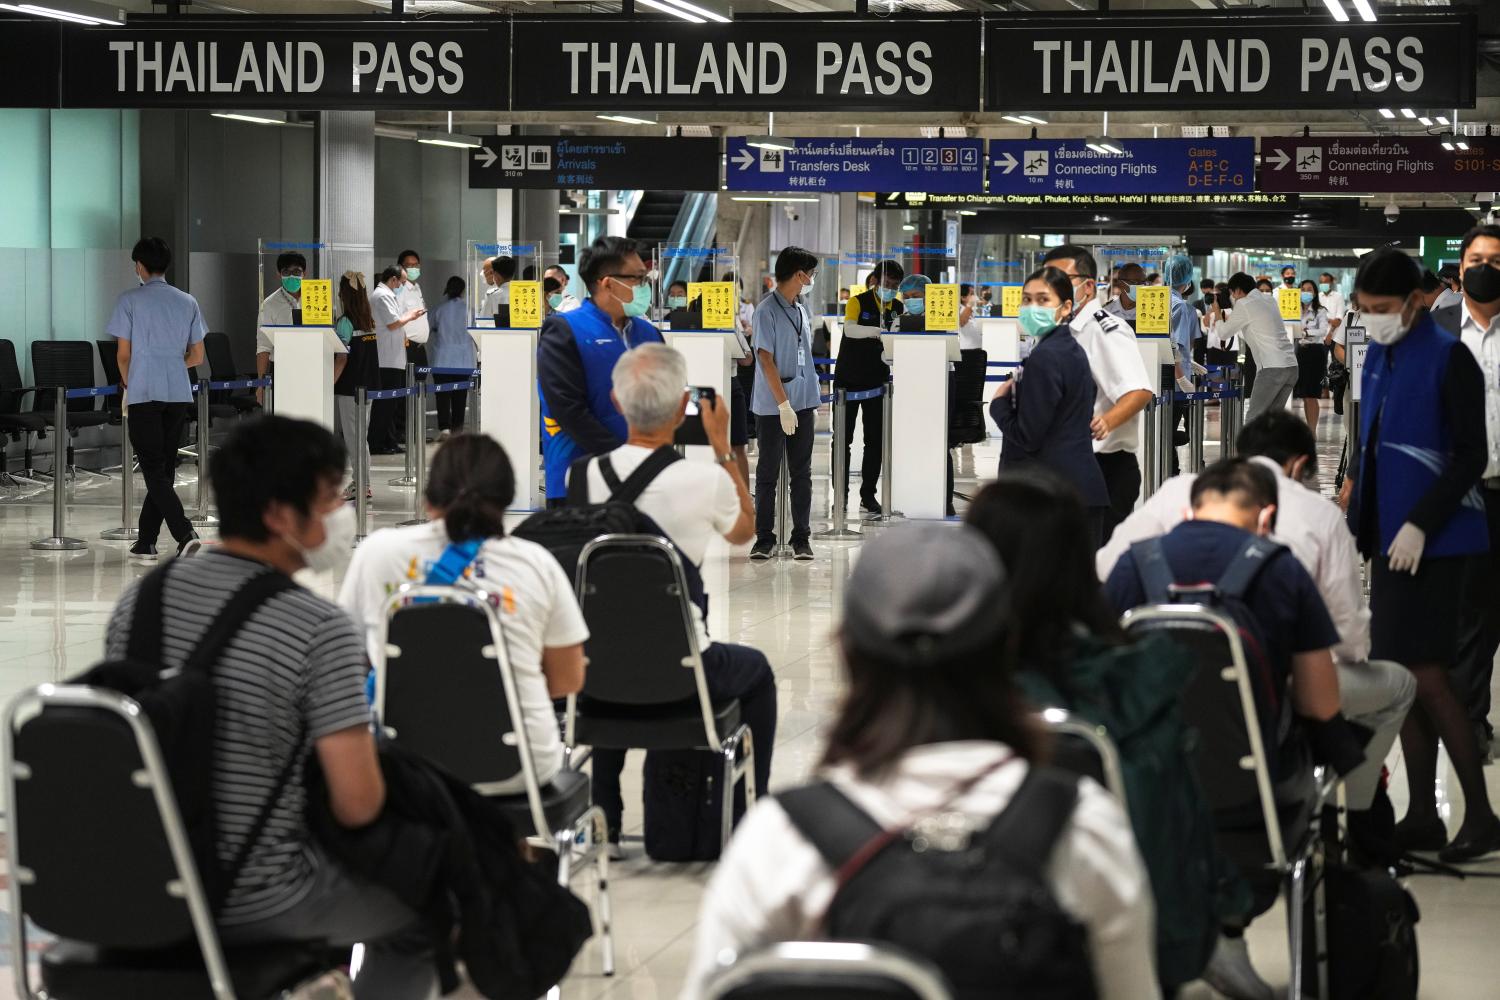 Регистрация «Thailand Pass» облегчена для туристов